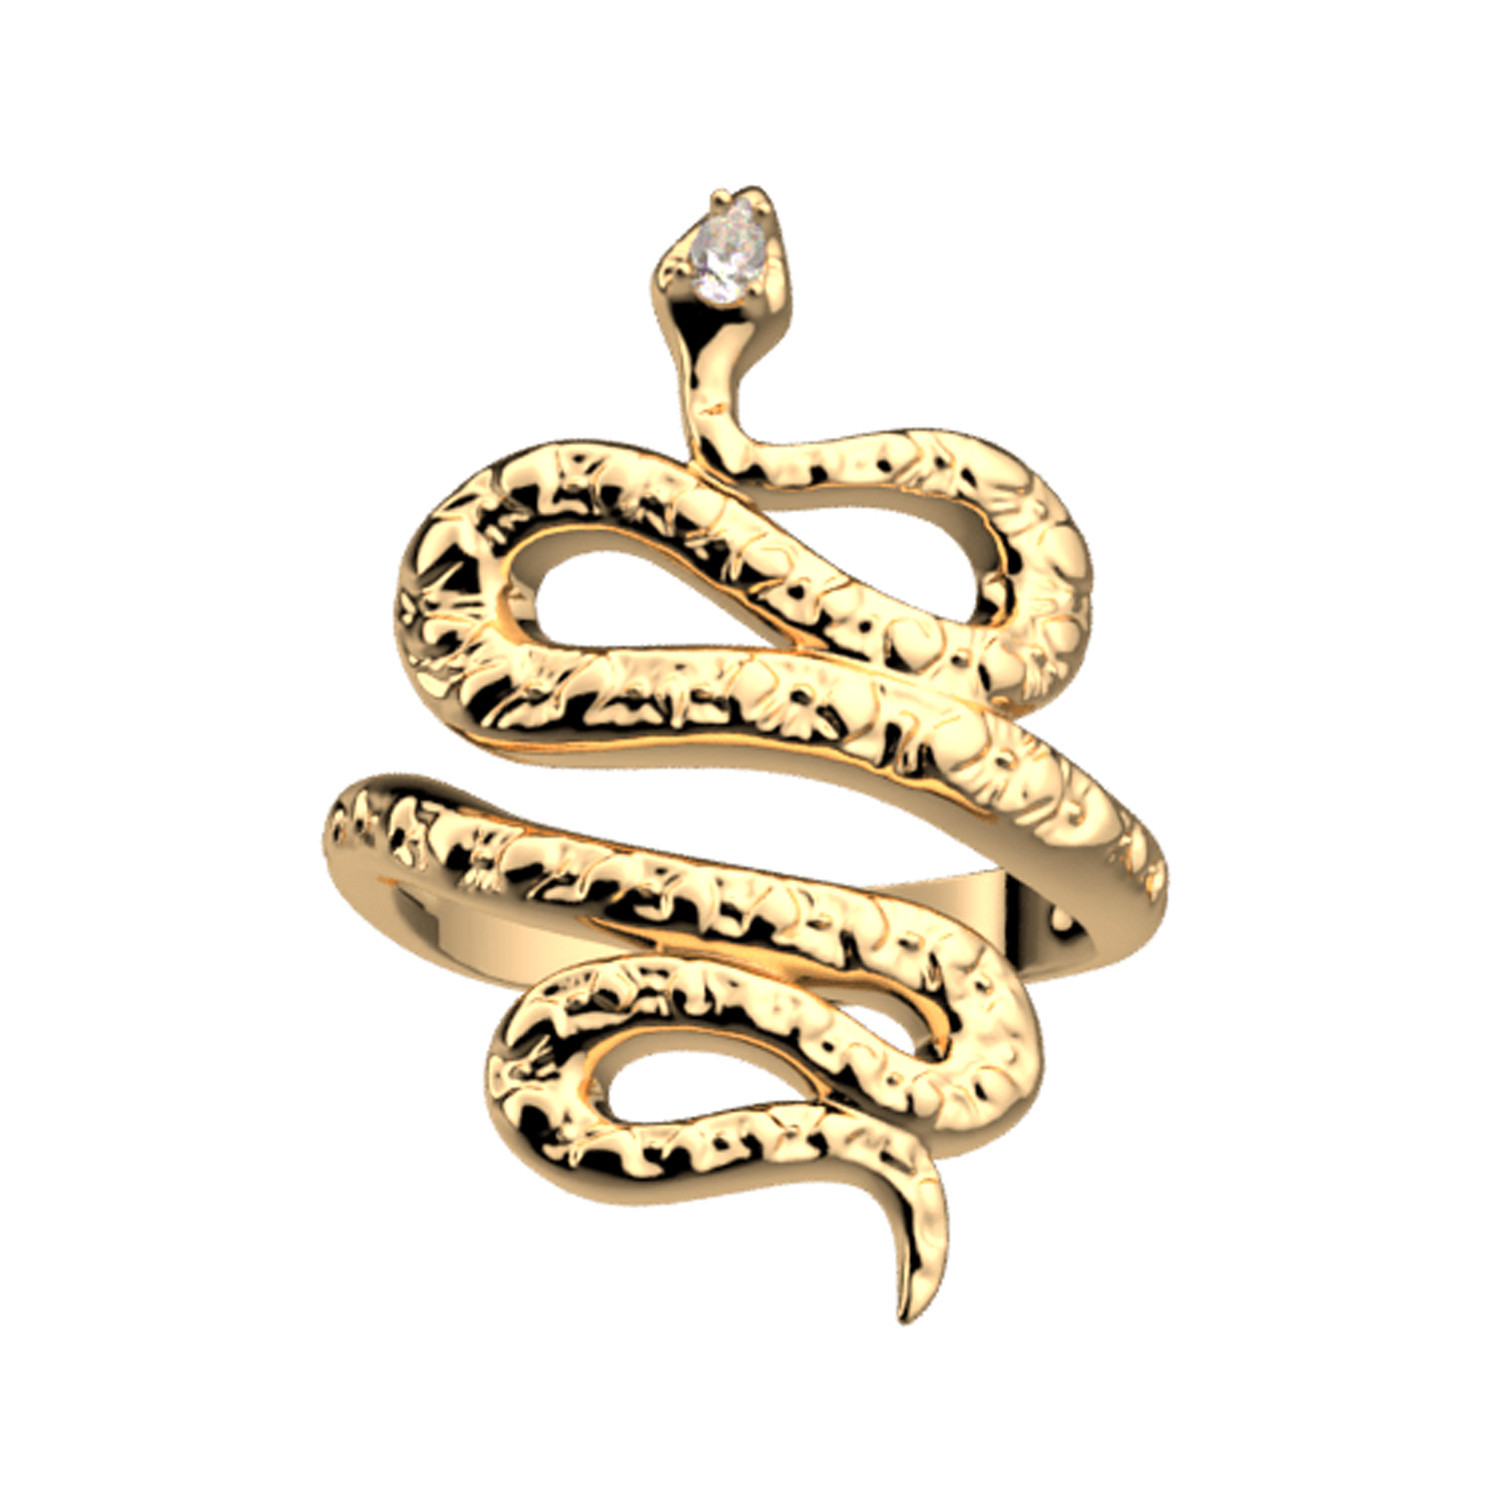 Bague Les Georgettes Serpent dorée
Collection Les Précieuses